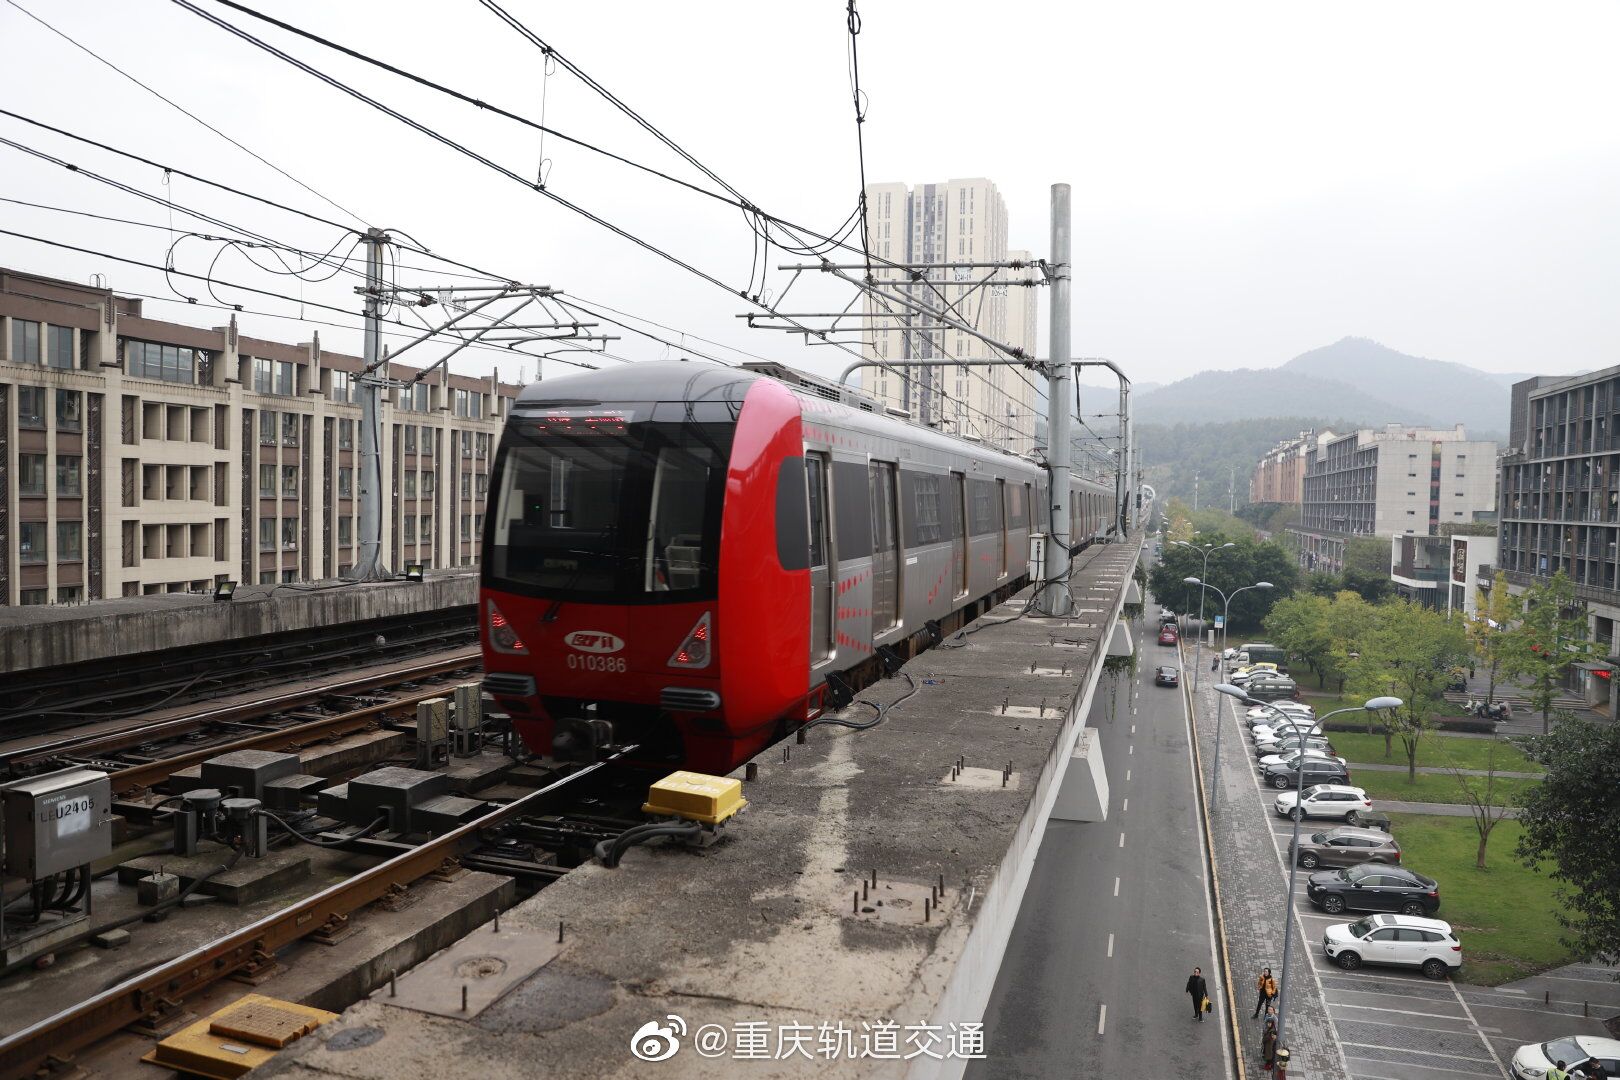 轨道尖顶坡至璧山段不载客试运行进展顺利。图片来自重庆轨道集团官方微博.jpg